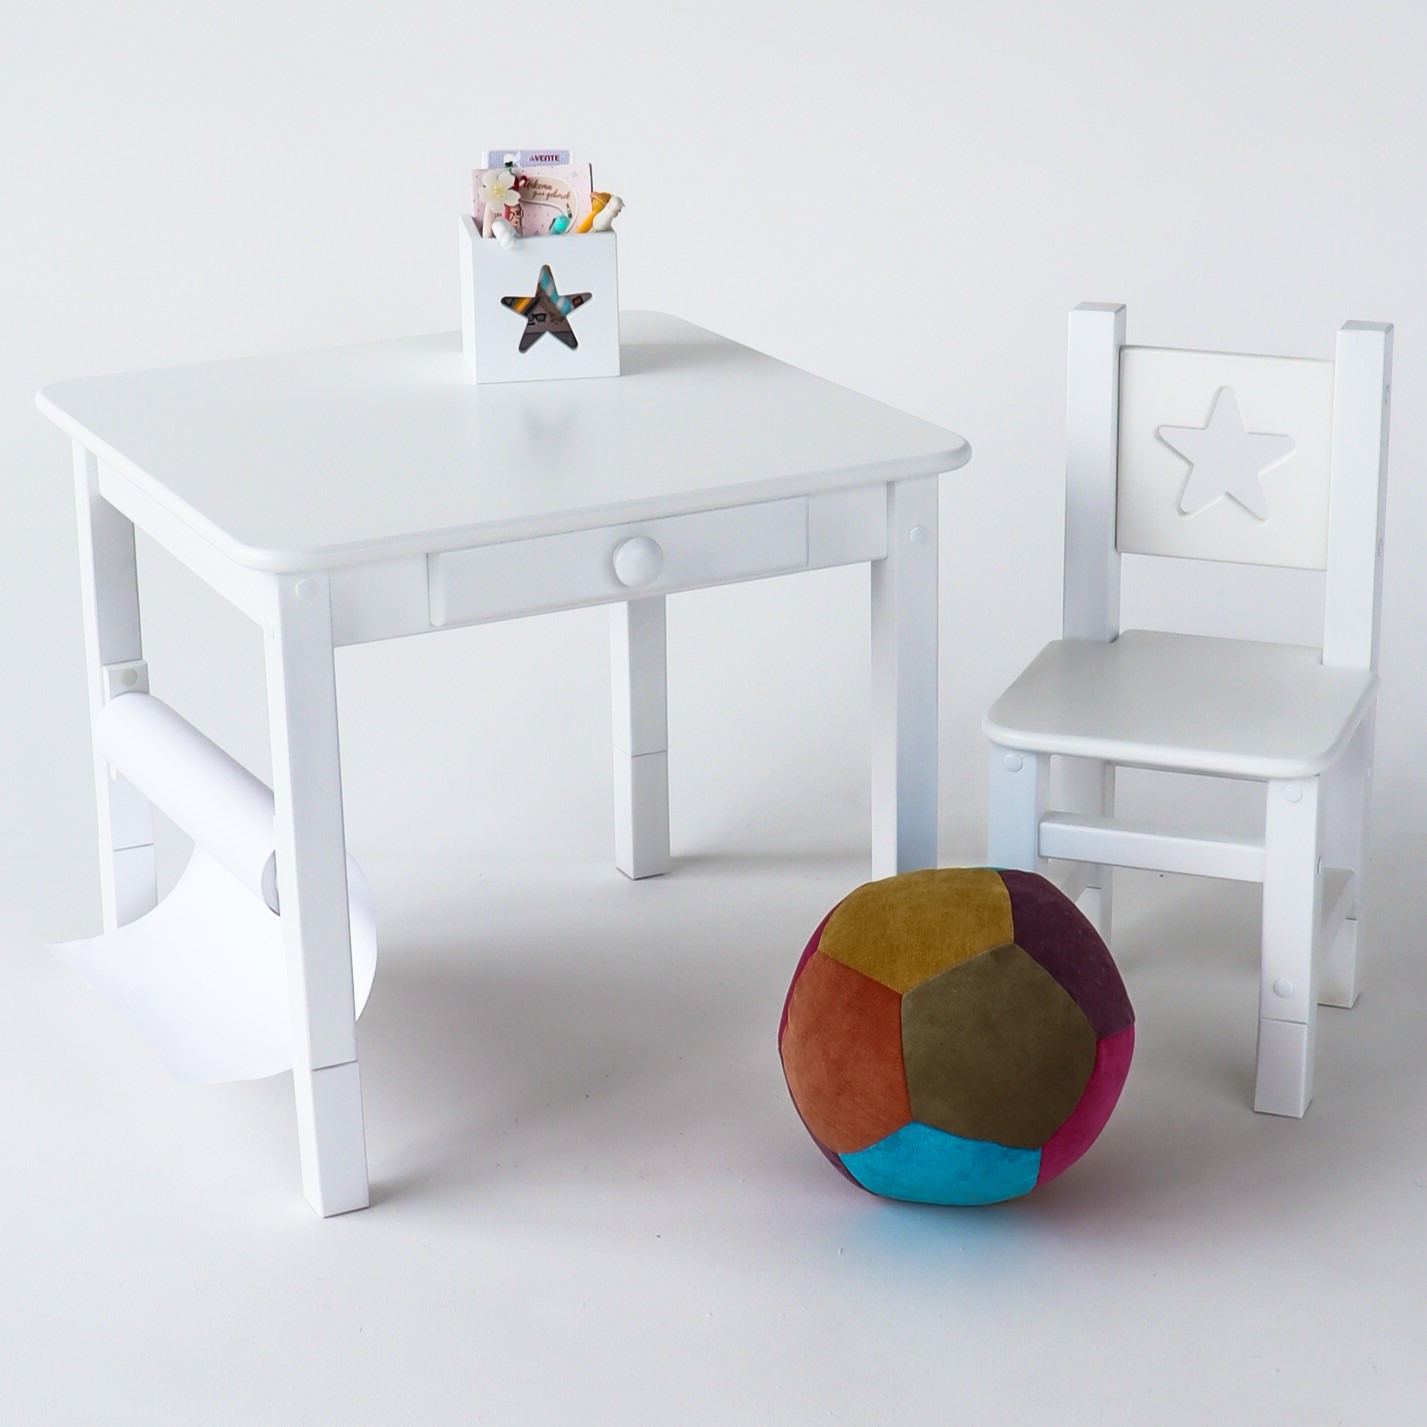 Комплект детской мебели растущий стол и стул Simba StarRast комплект disney 1 рапунцель от 1 5 до 3 х лет стол 52см пенал стул мягк д1р м